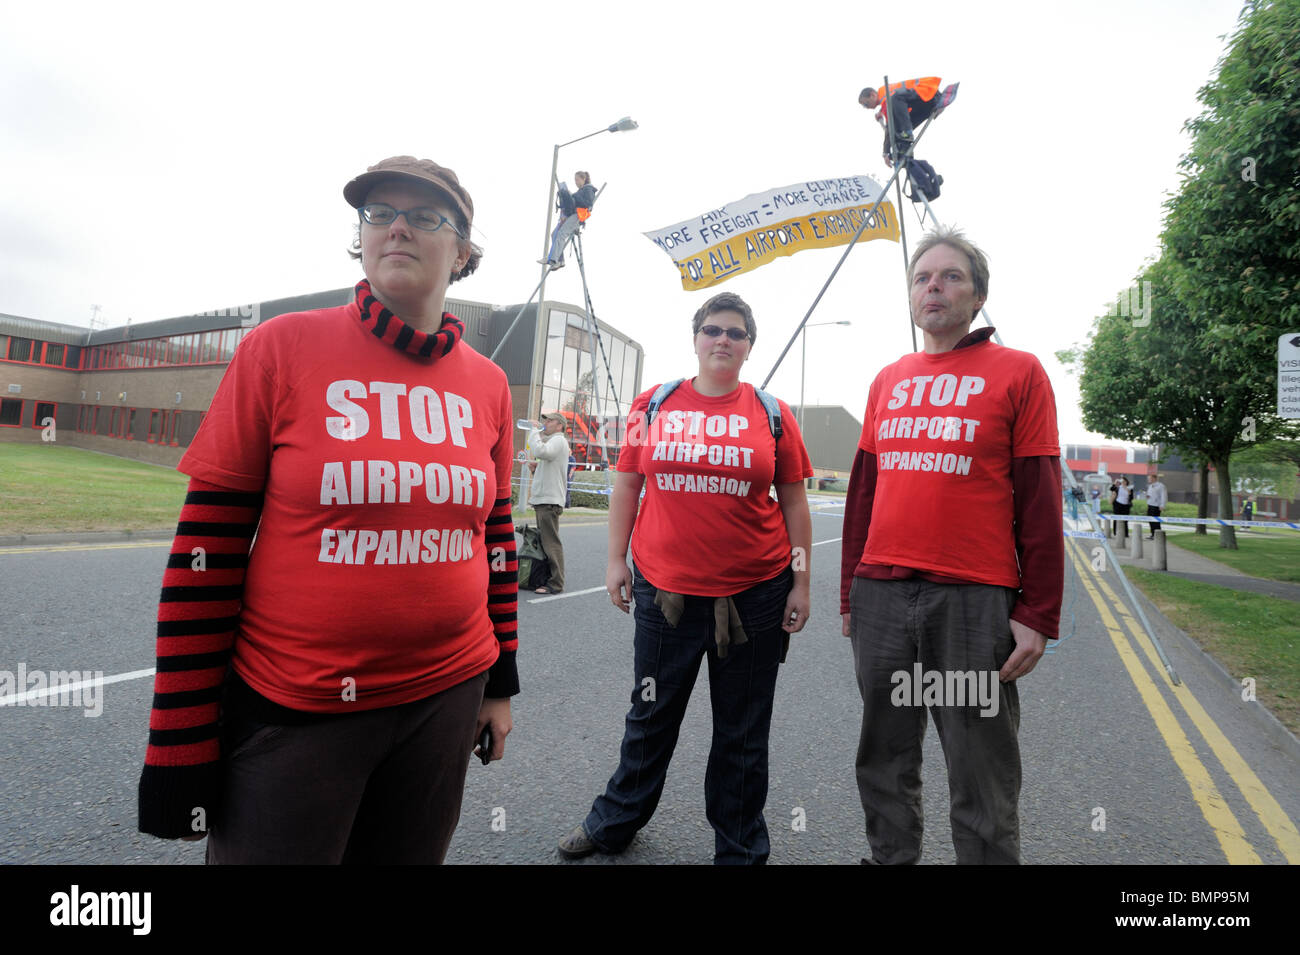 Manifestanti blocco Manchester Airport Freight Terminal Manchester Regno Unito contro l aeroporto di espansione e di cambiamento climatico danni Foto Stock